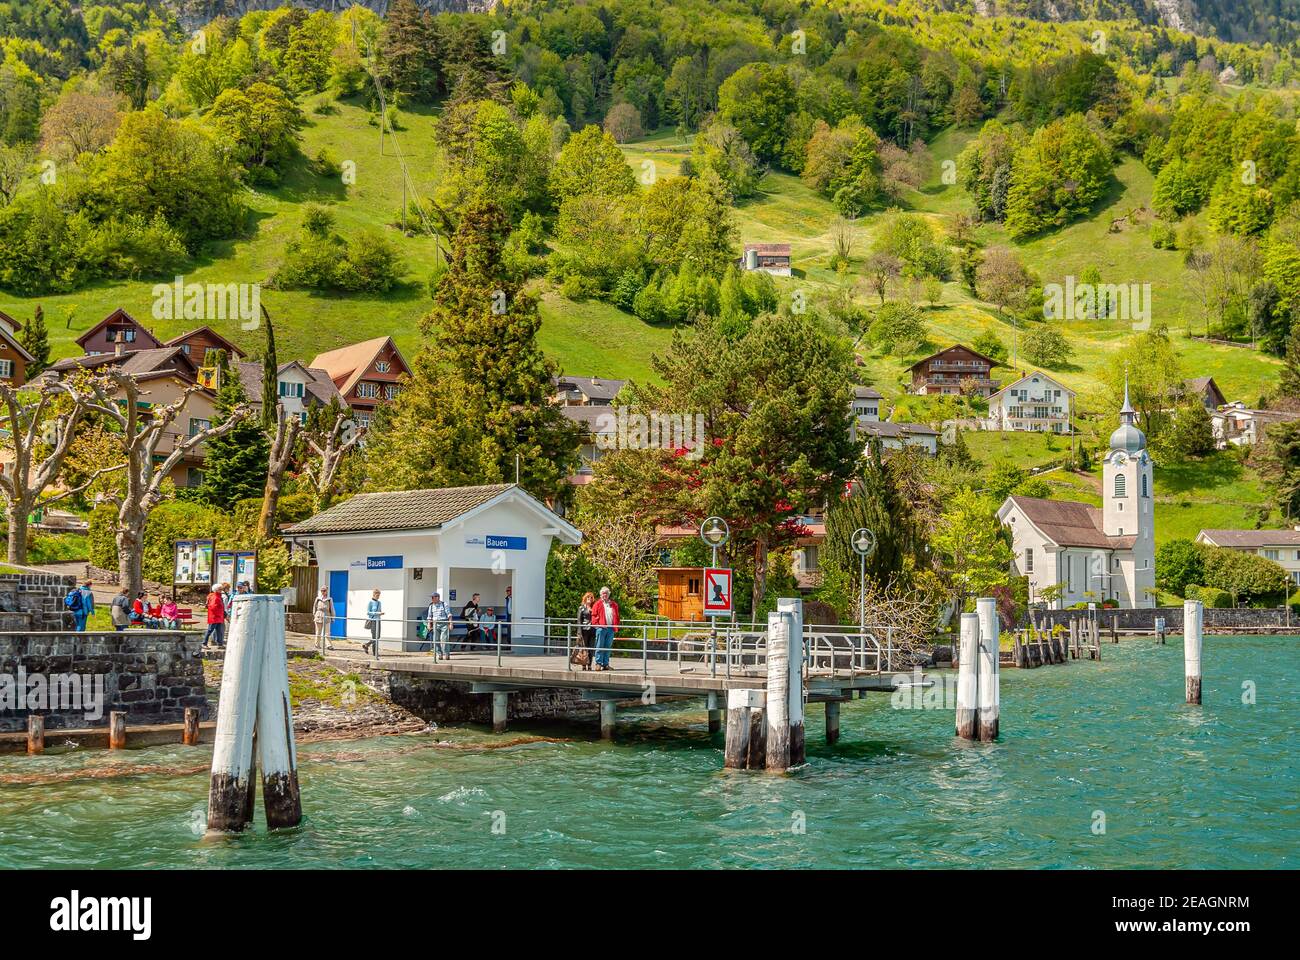 Village Bauen at Lake Lucerne, Central Switzerland Stock Photo